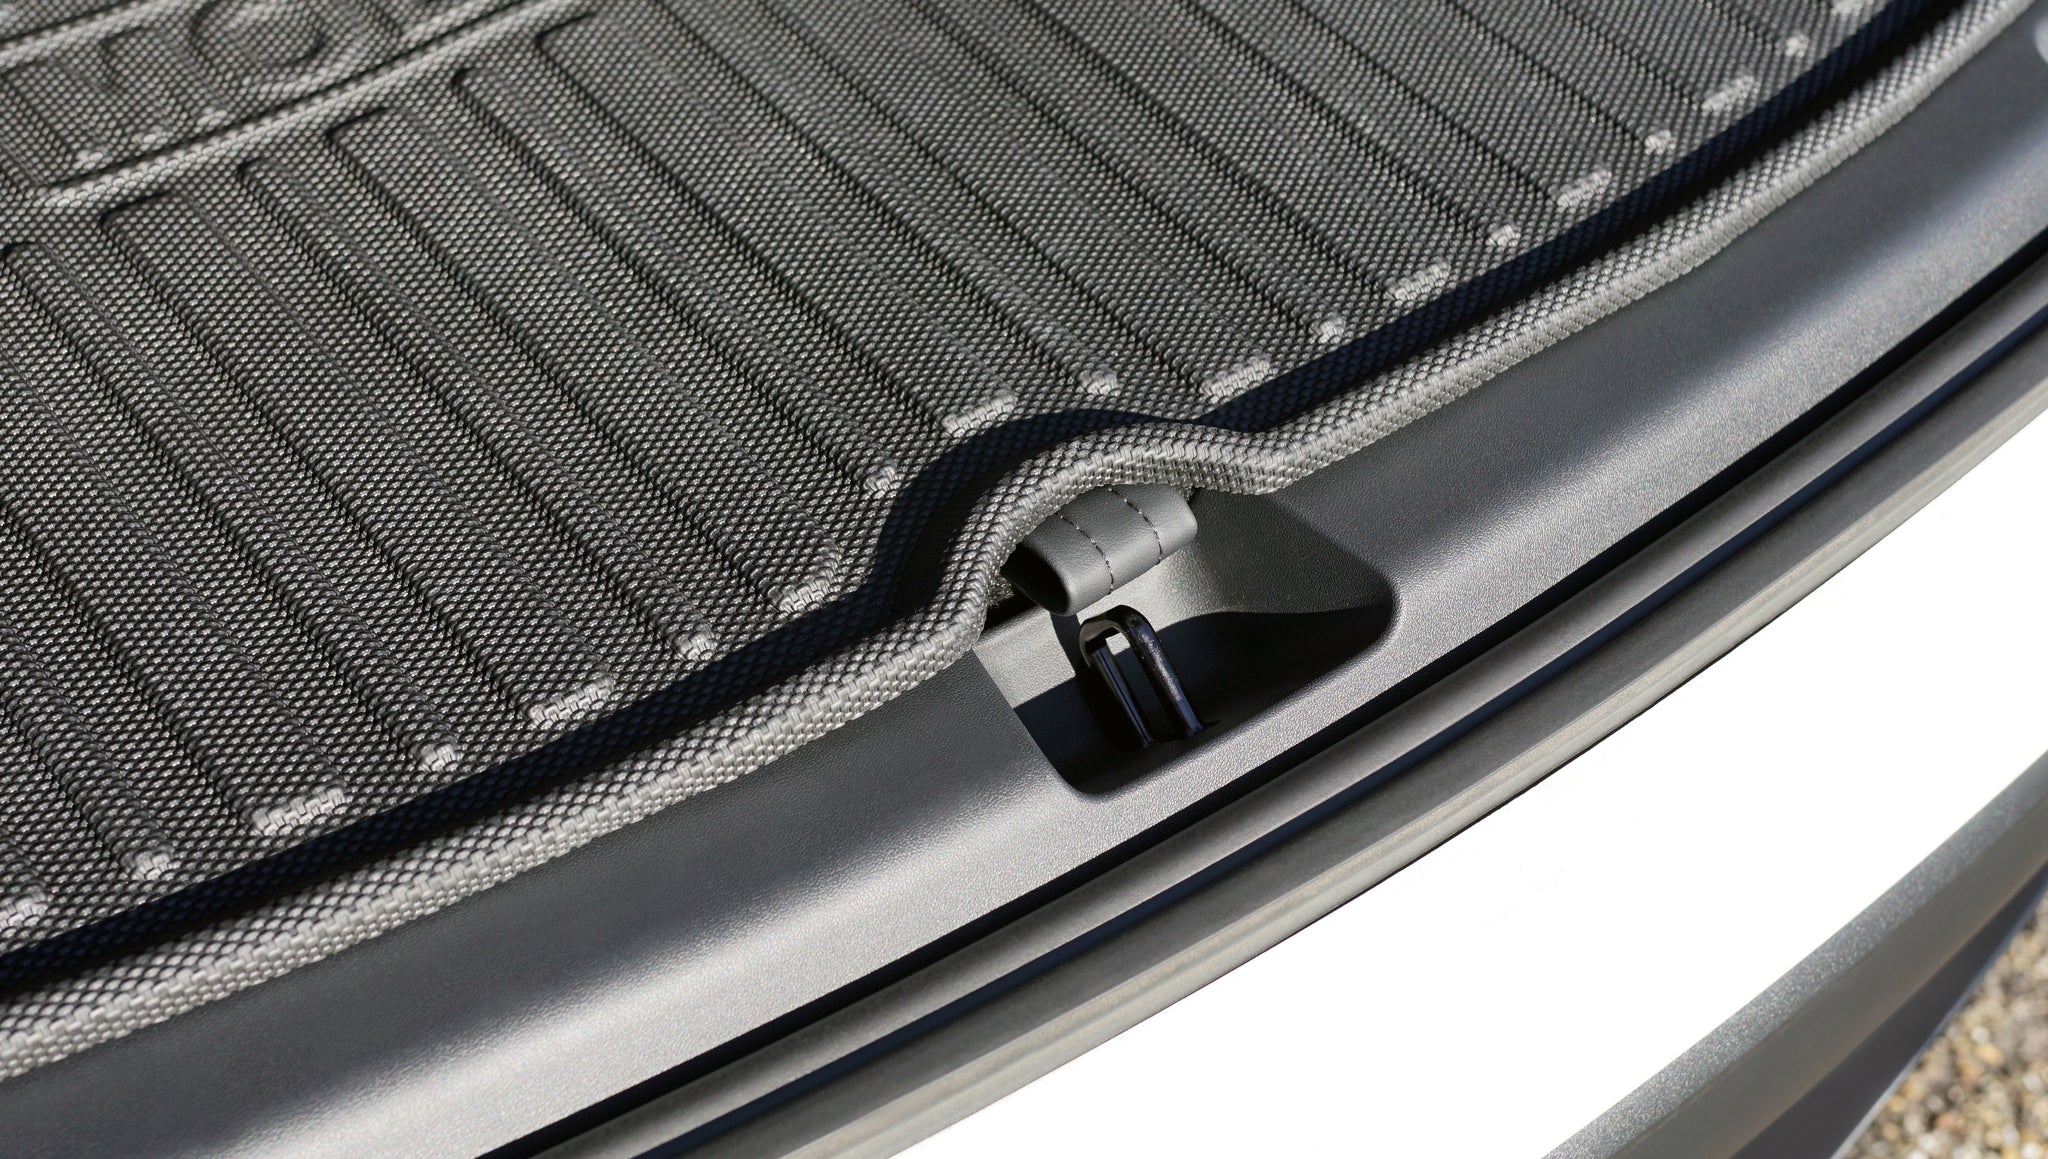 3D Kofferraummatte + Unterbodenmatte passend für Tesla Model Y